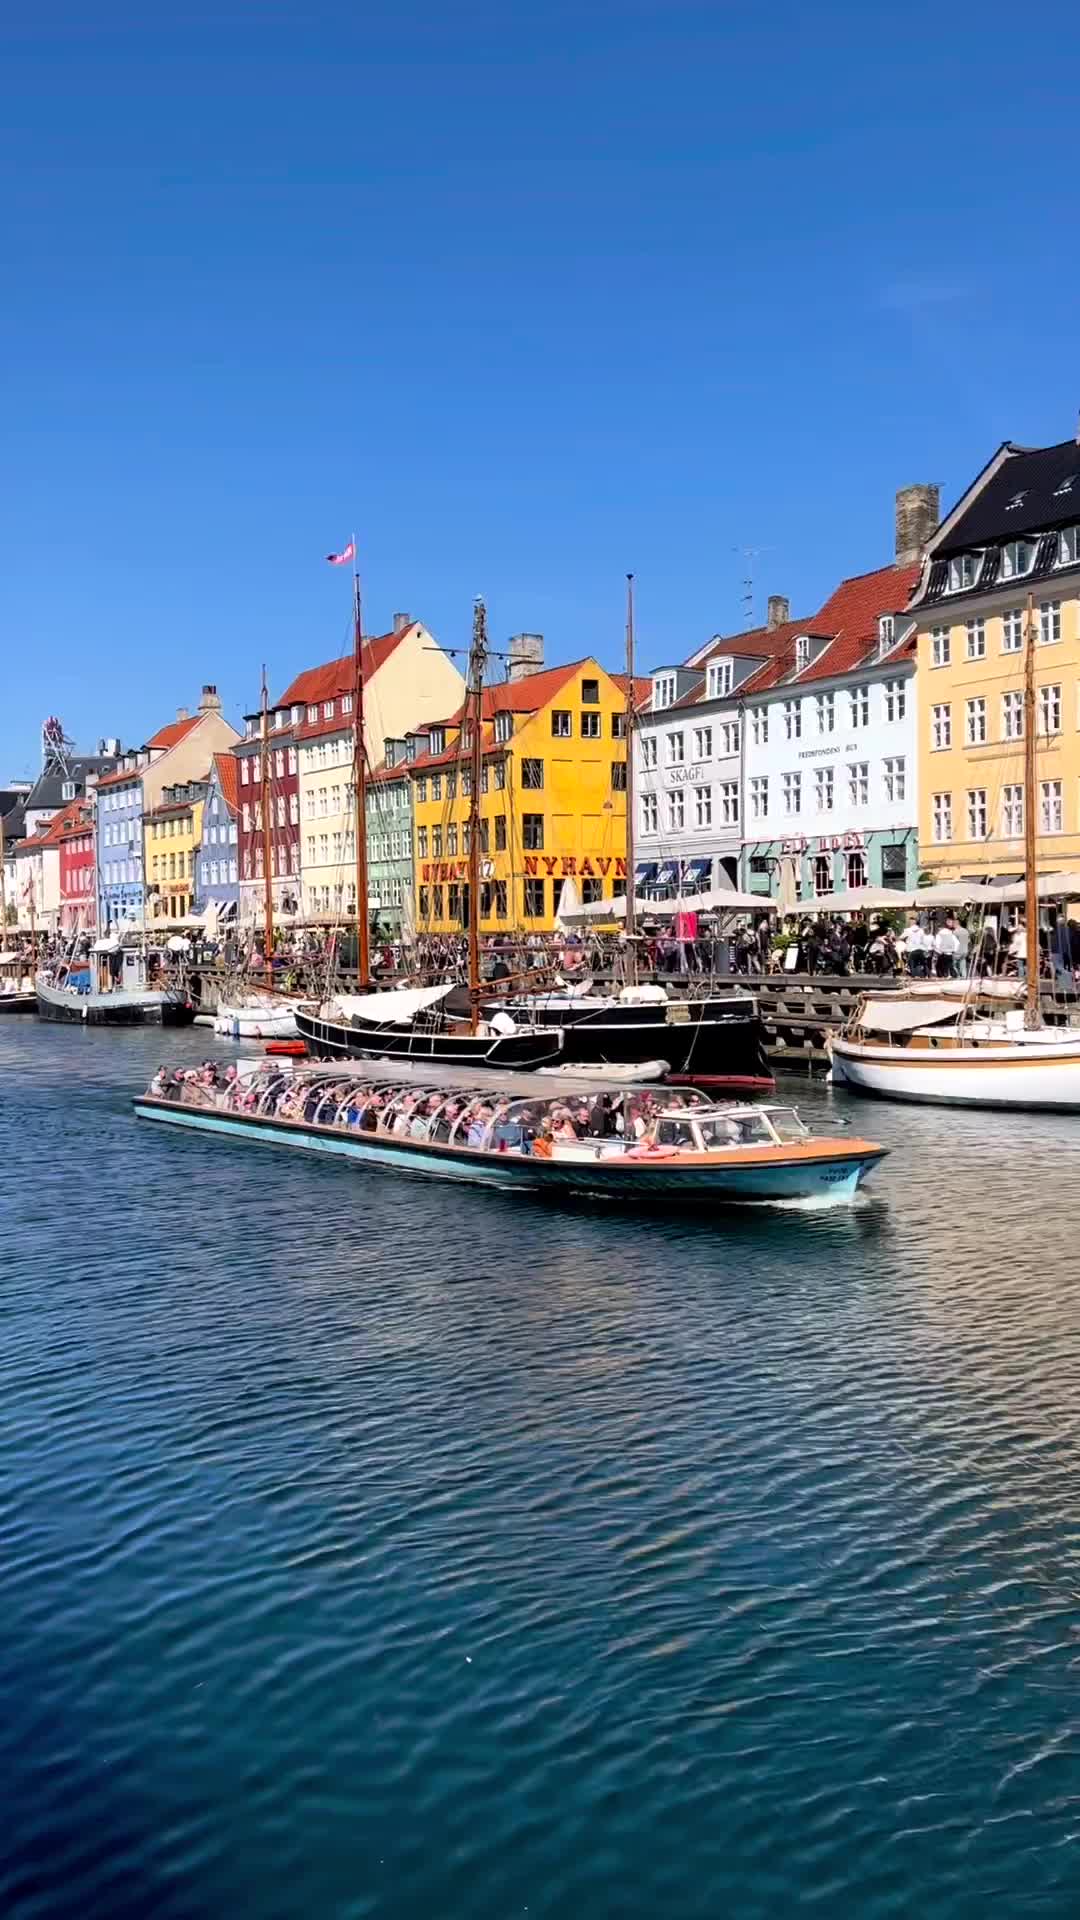 5 Reasons to Visit Copenhagen - Top Attractions